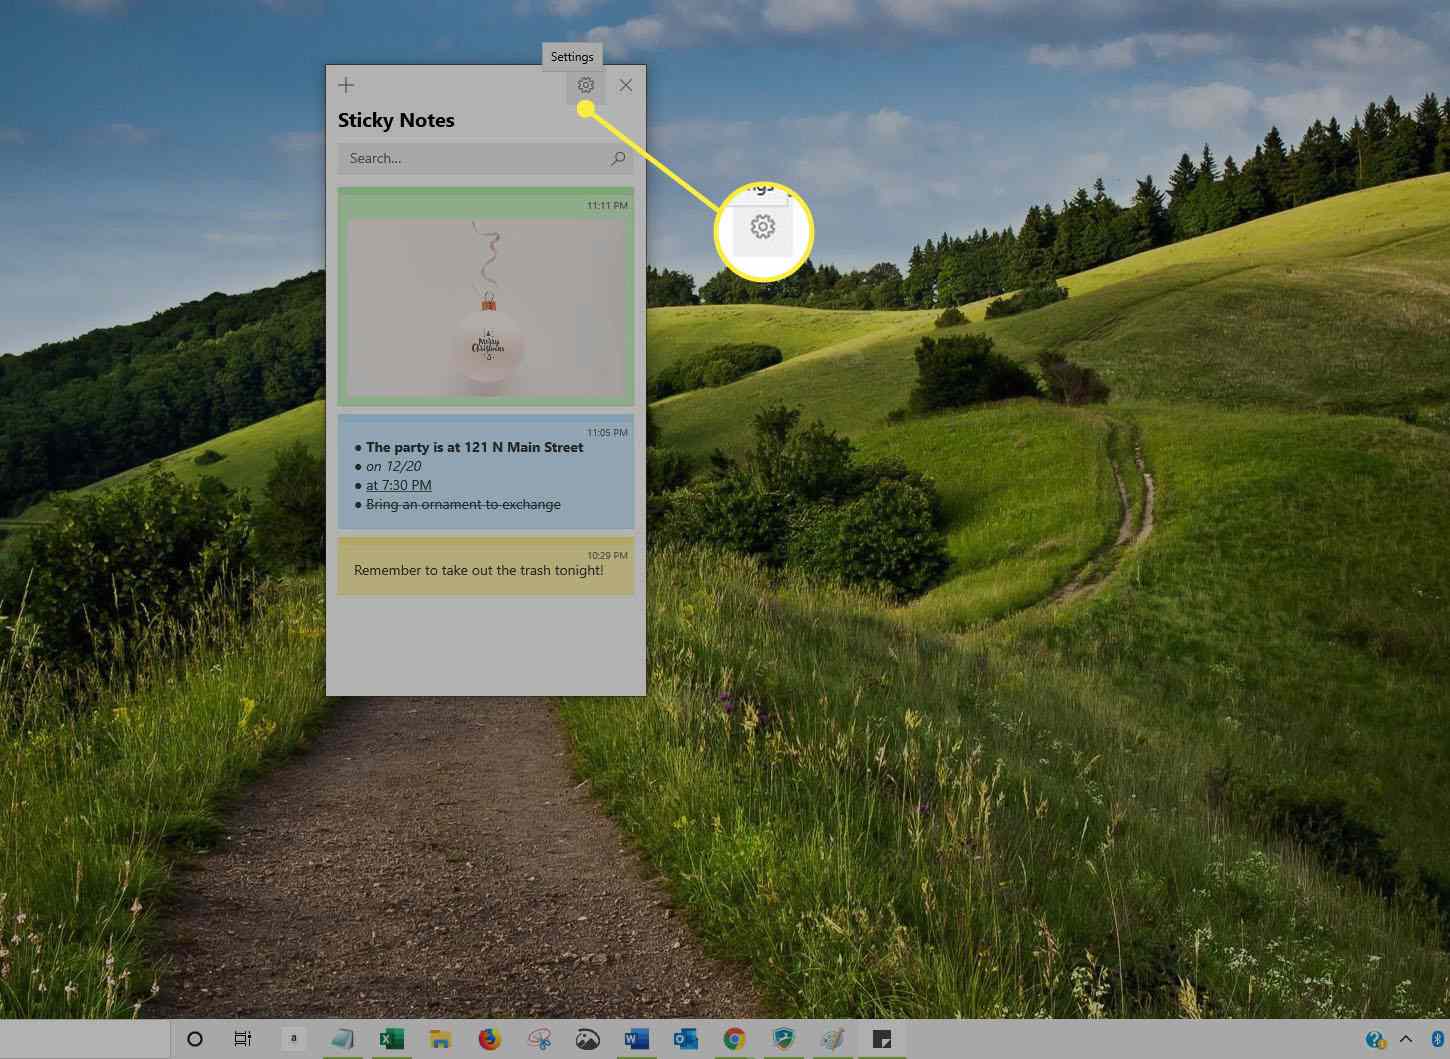 Sticky Notes interface on Windows 10.jpg